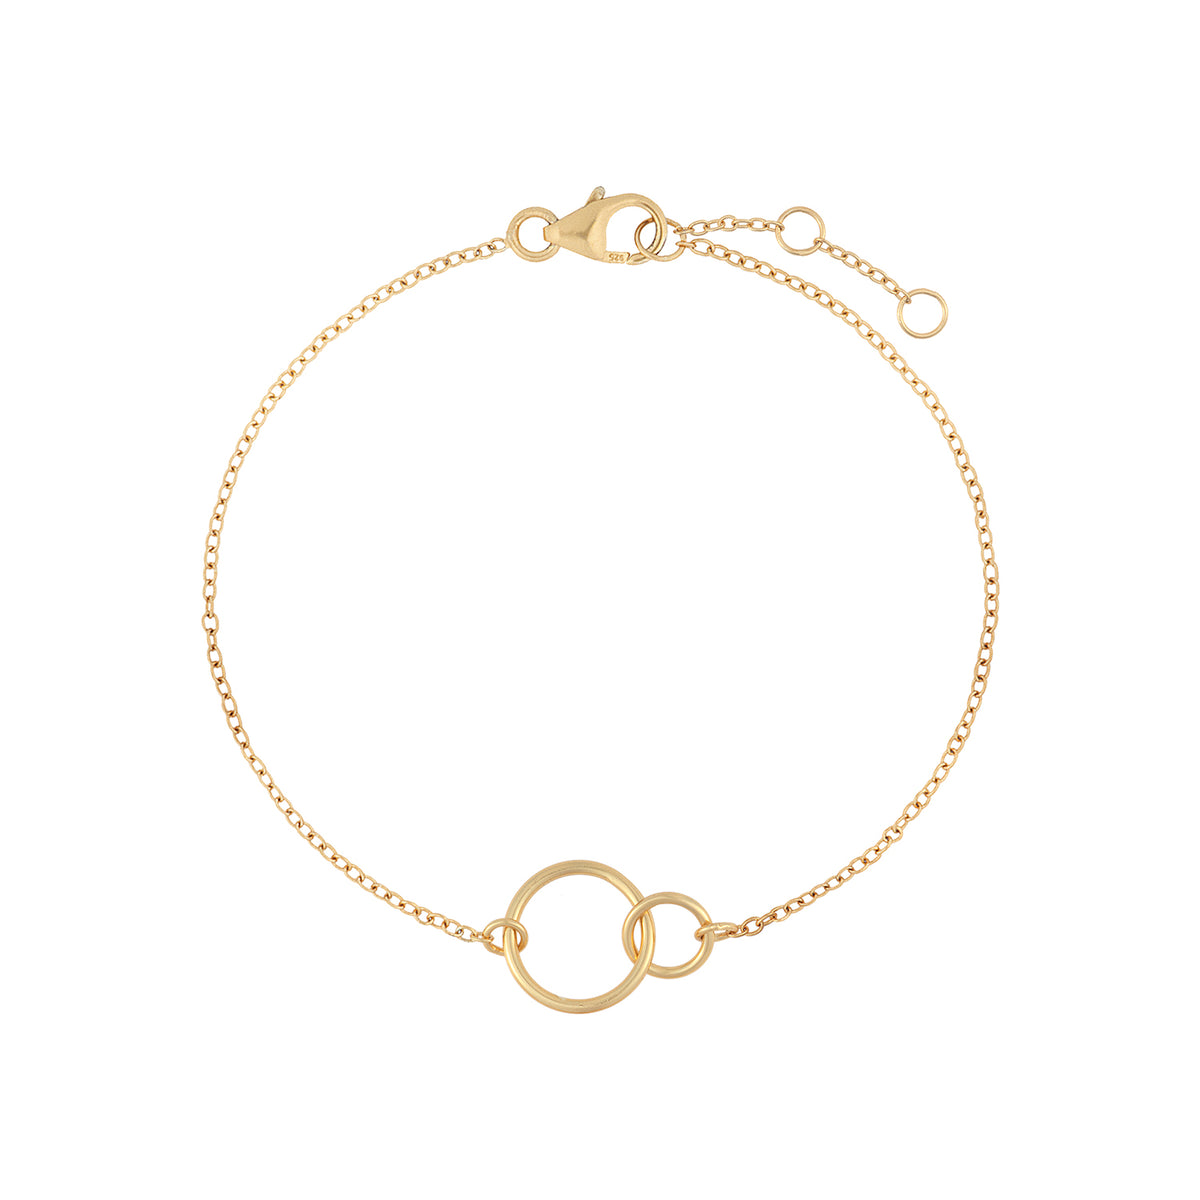 Links of Love Bracelet – J&CO Jewellery